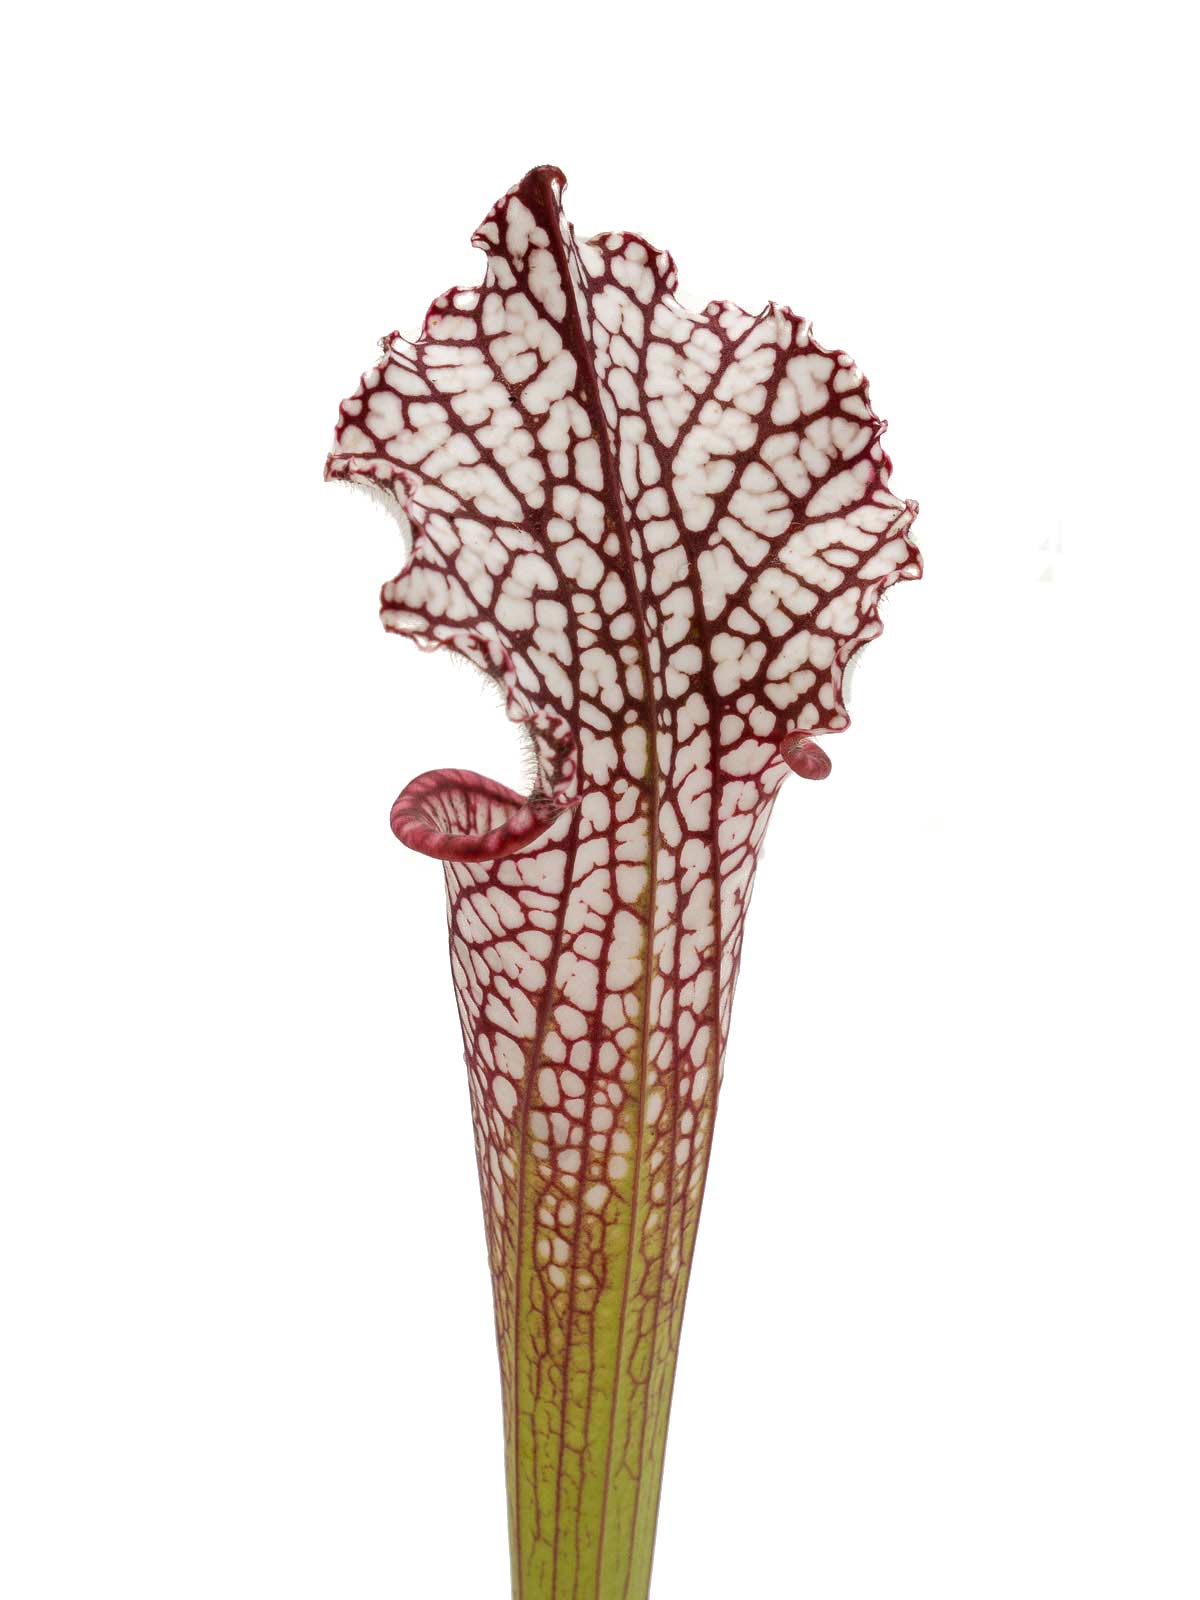 Sarracenia leucophylla - MK L51B, Hosford, Liberty County, Florida